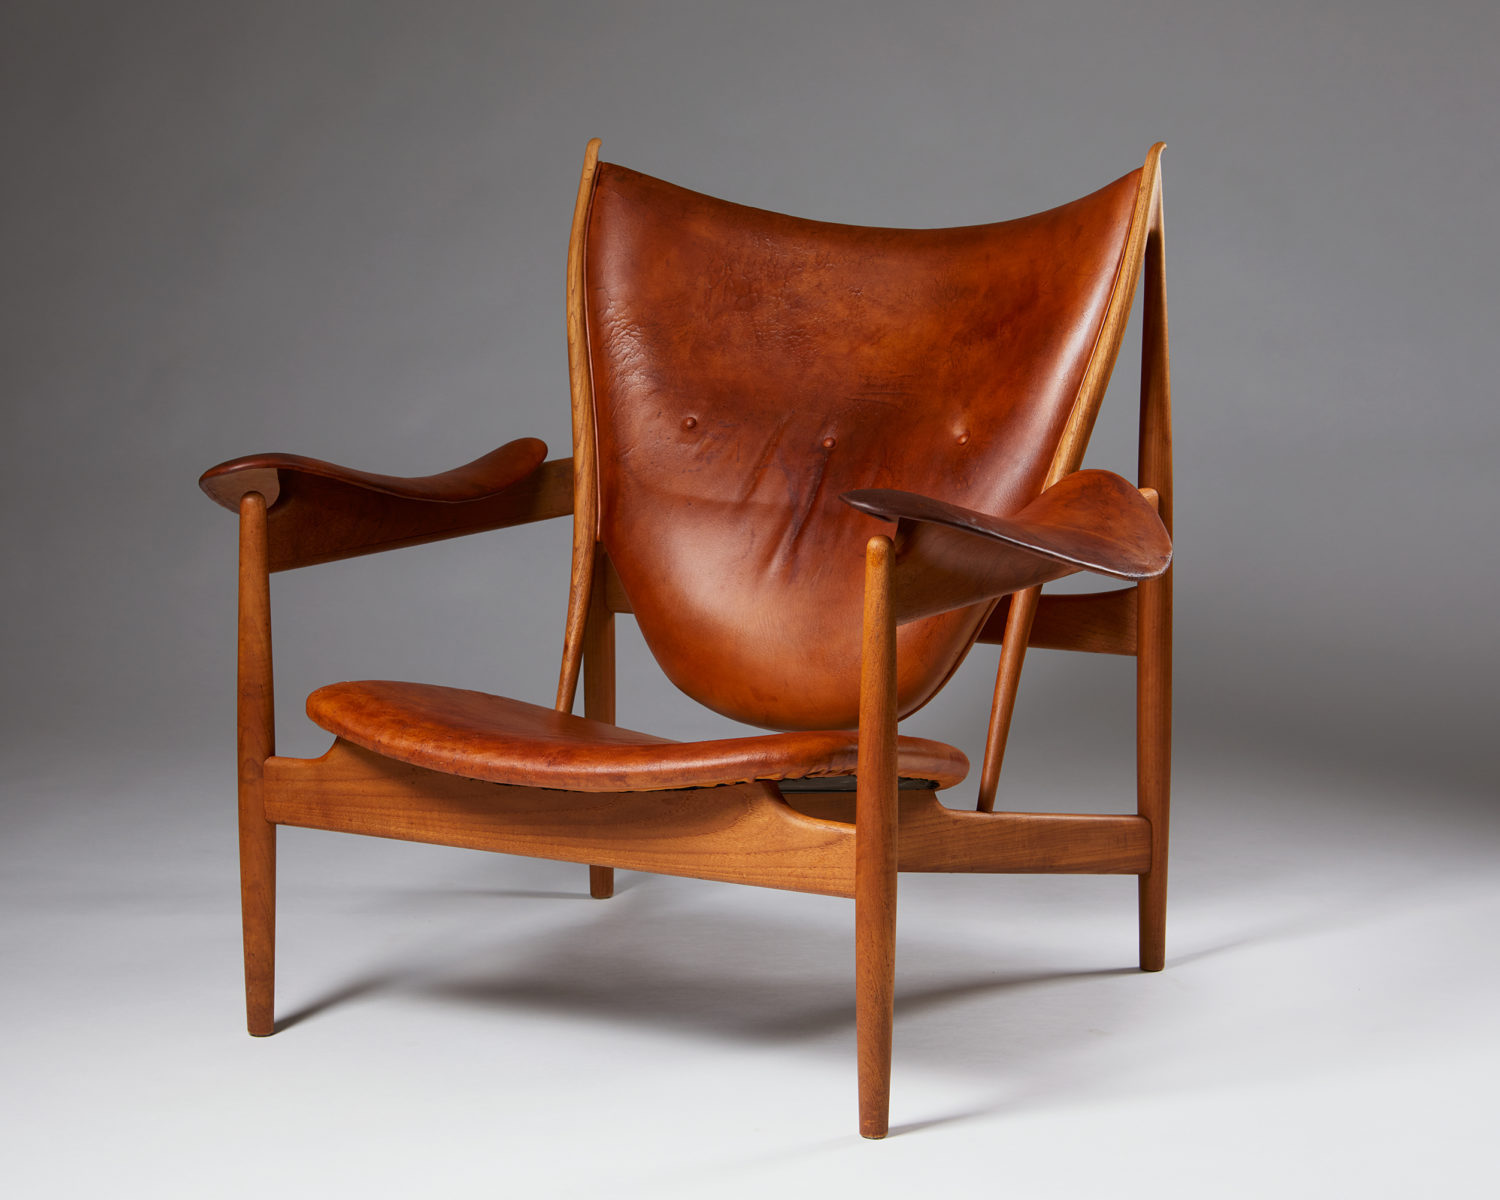 Scandinavian design: “Chieftain”armchair by Finn Juhl for Niels Vodder, Denmark, at Modernity